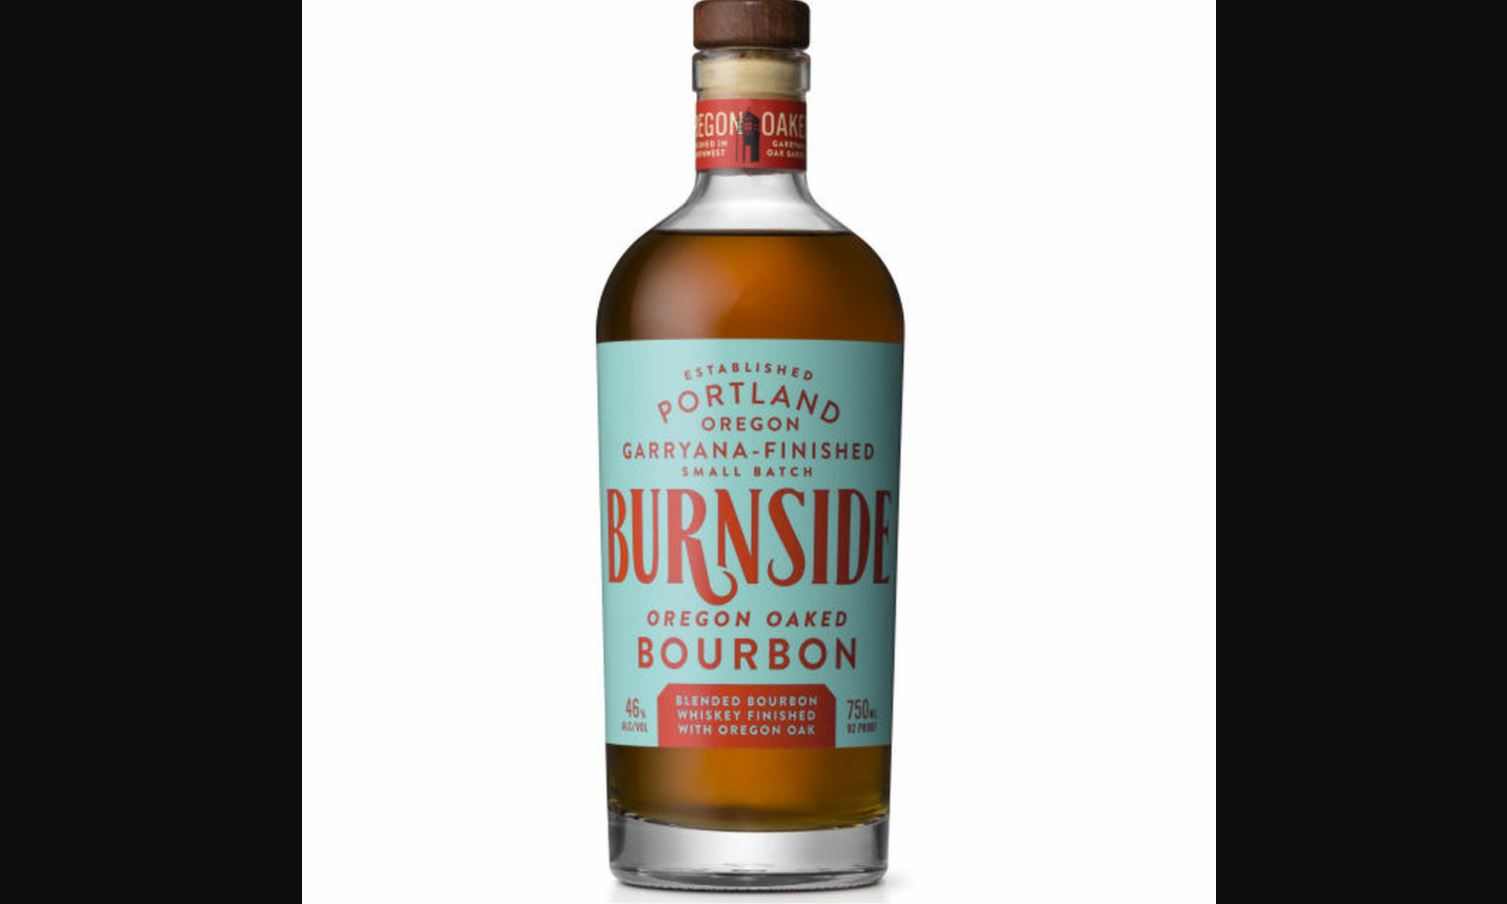 Burnside Bourbon Bottle